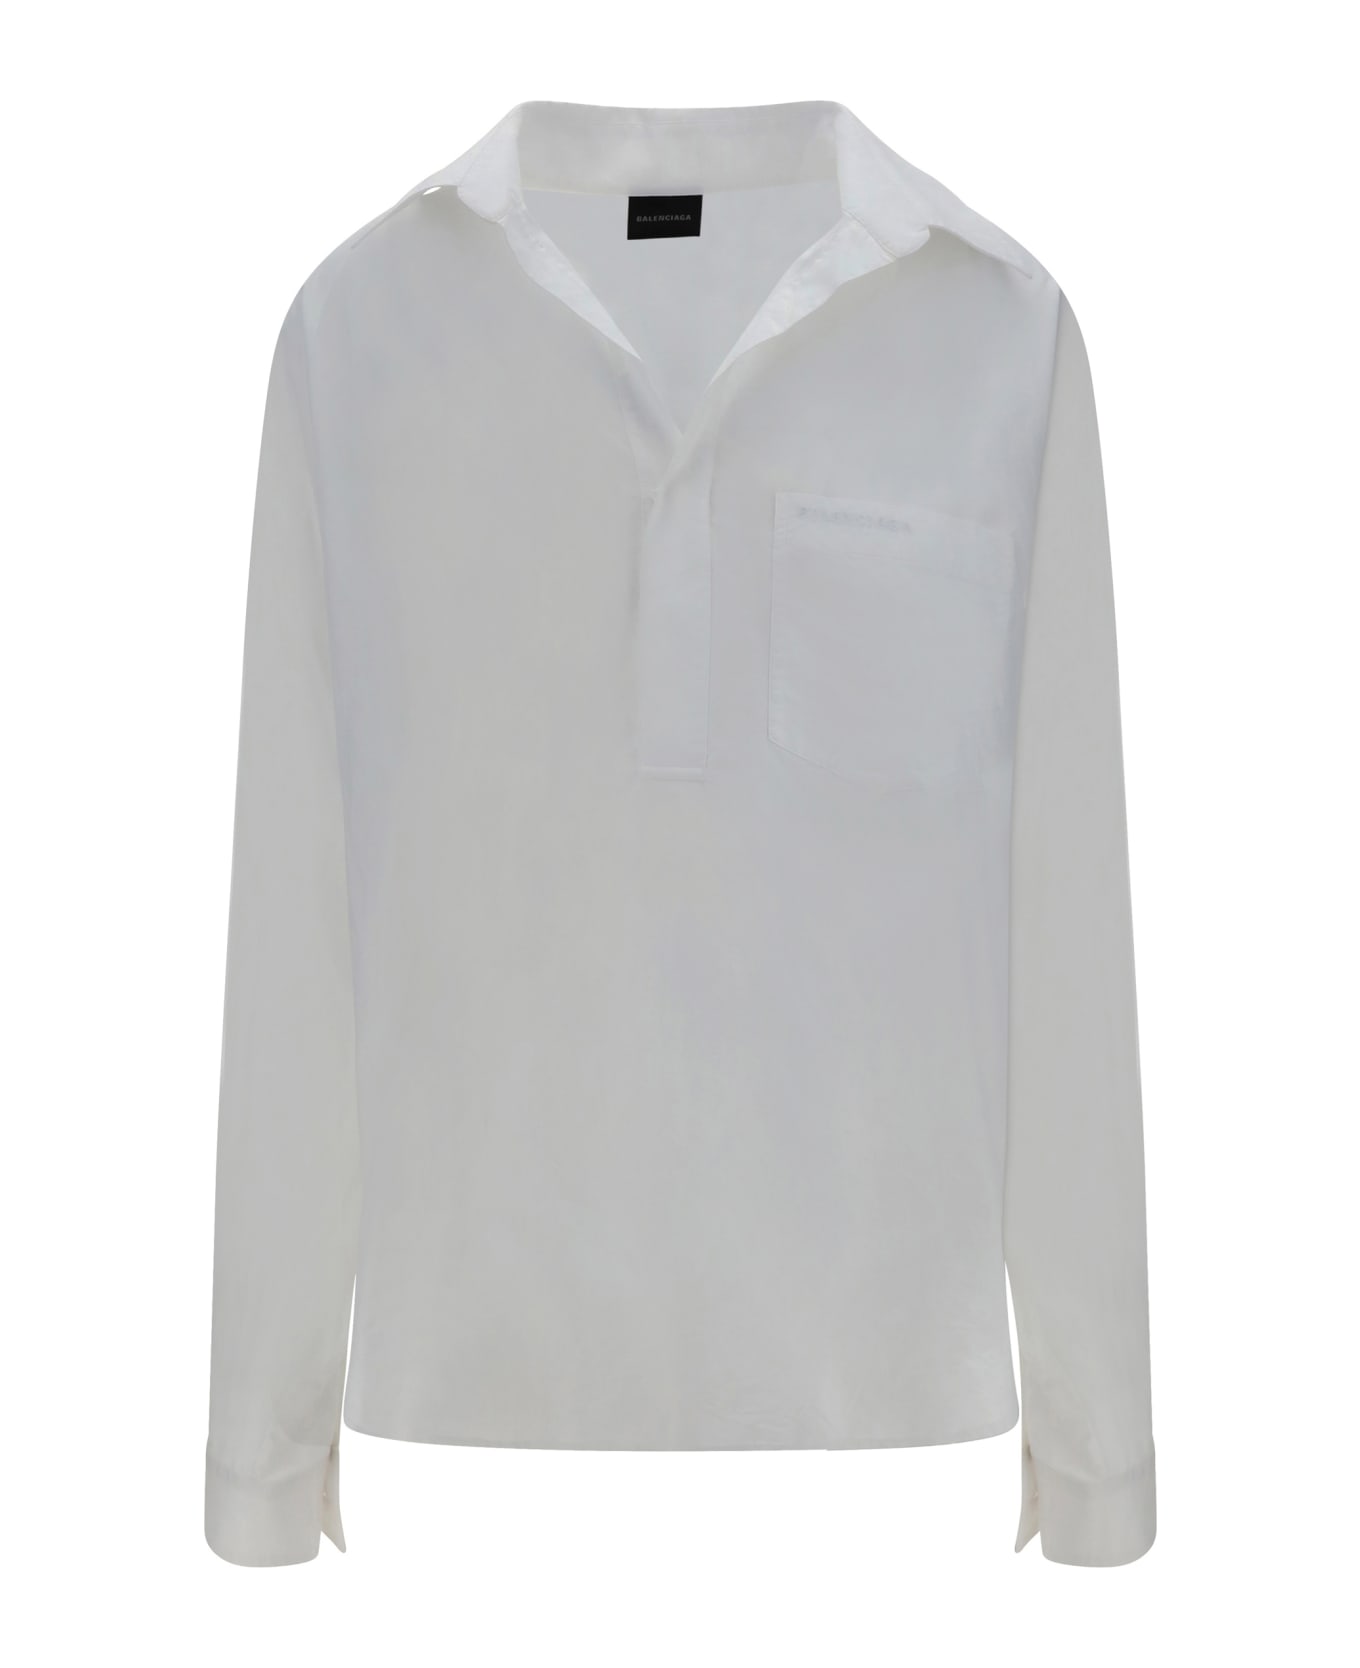 Balenciaga Vareuse Shirt - White